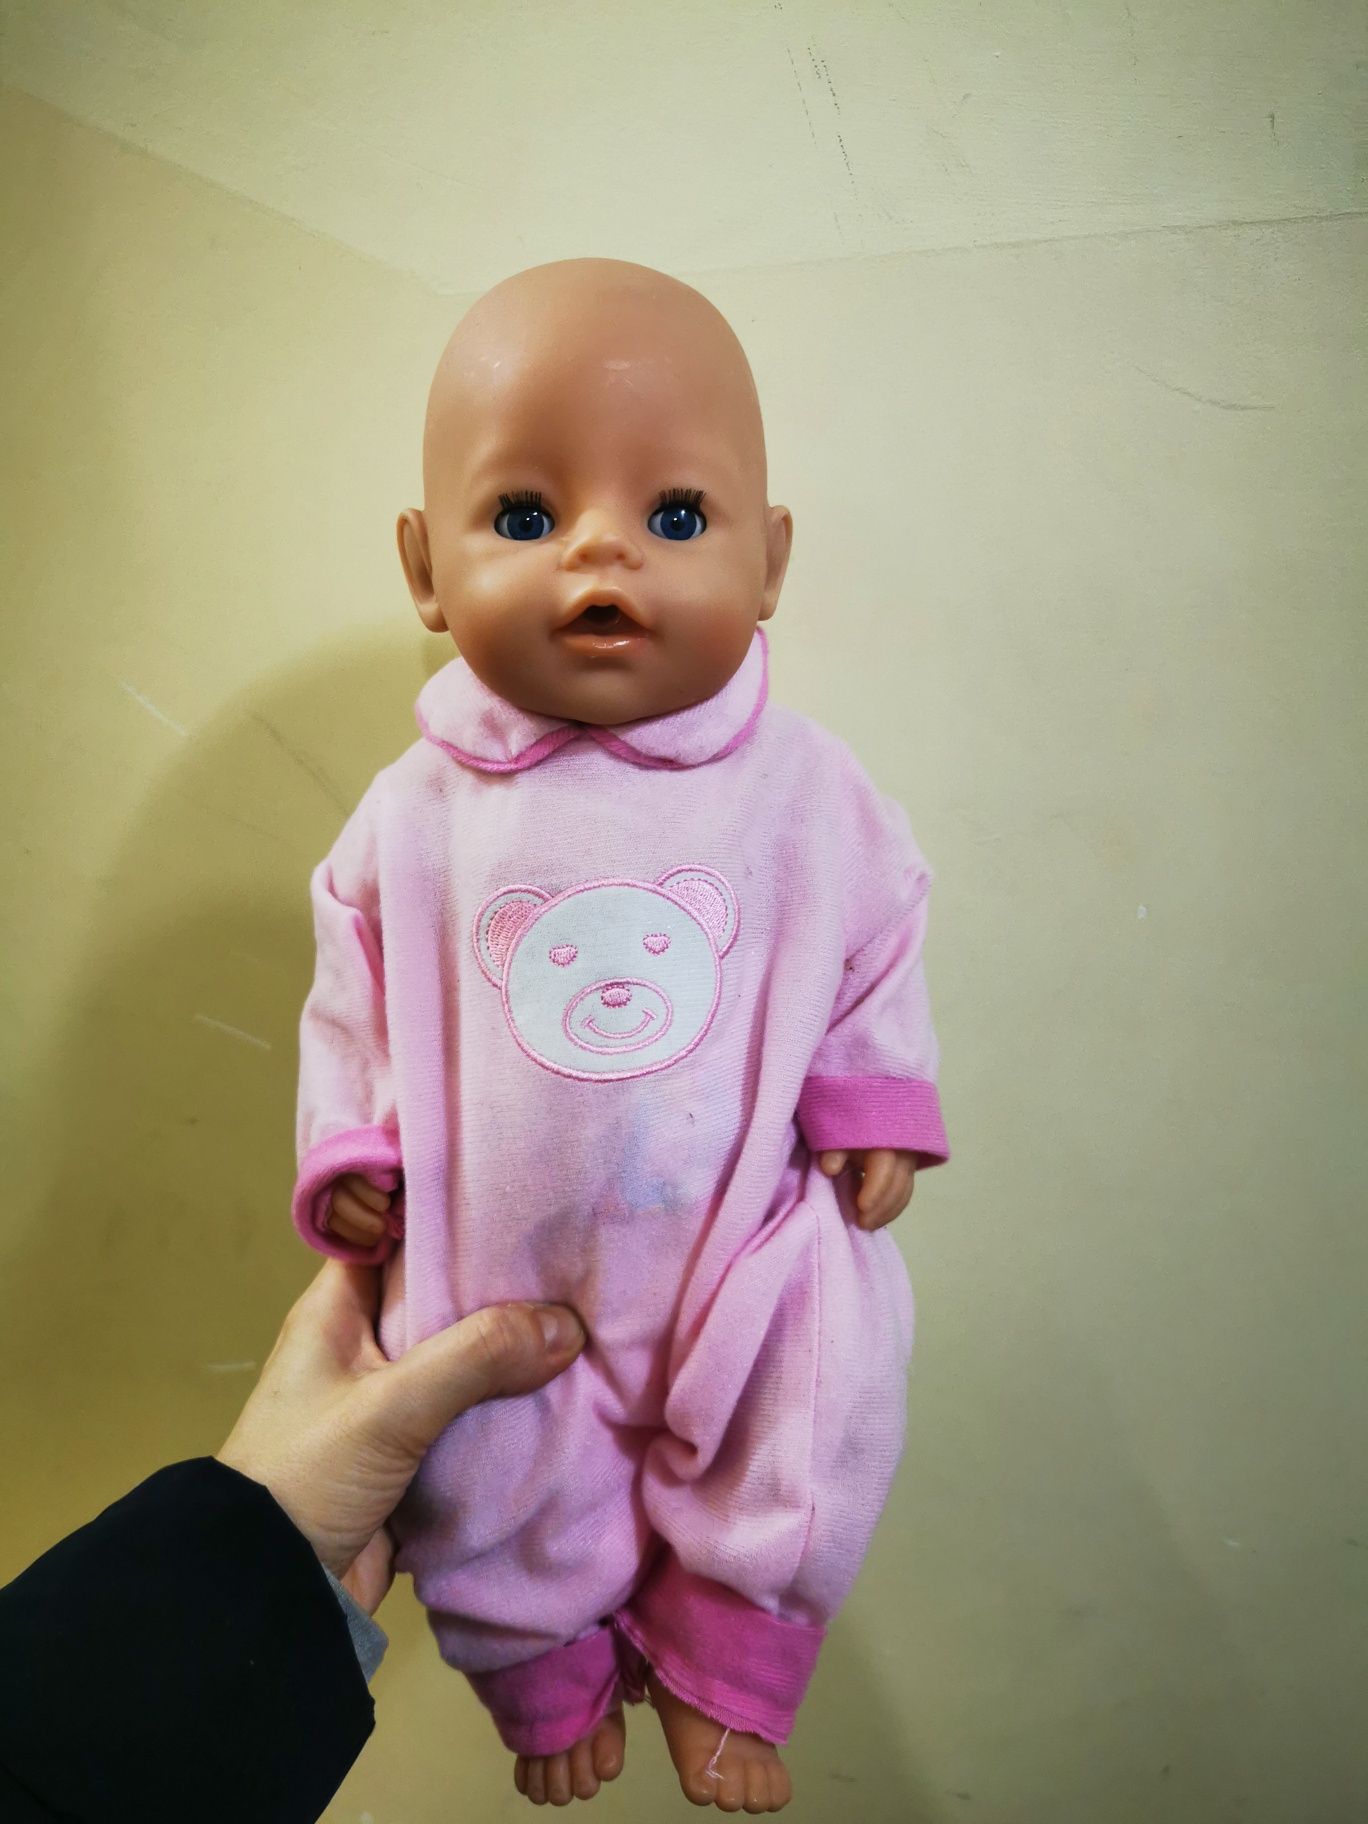 Lalka Baby Born Zapf Creation dziewczynka w śpiwórku różowym